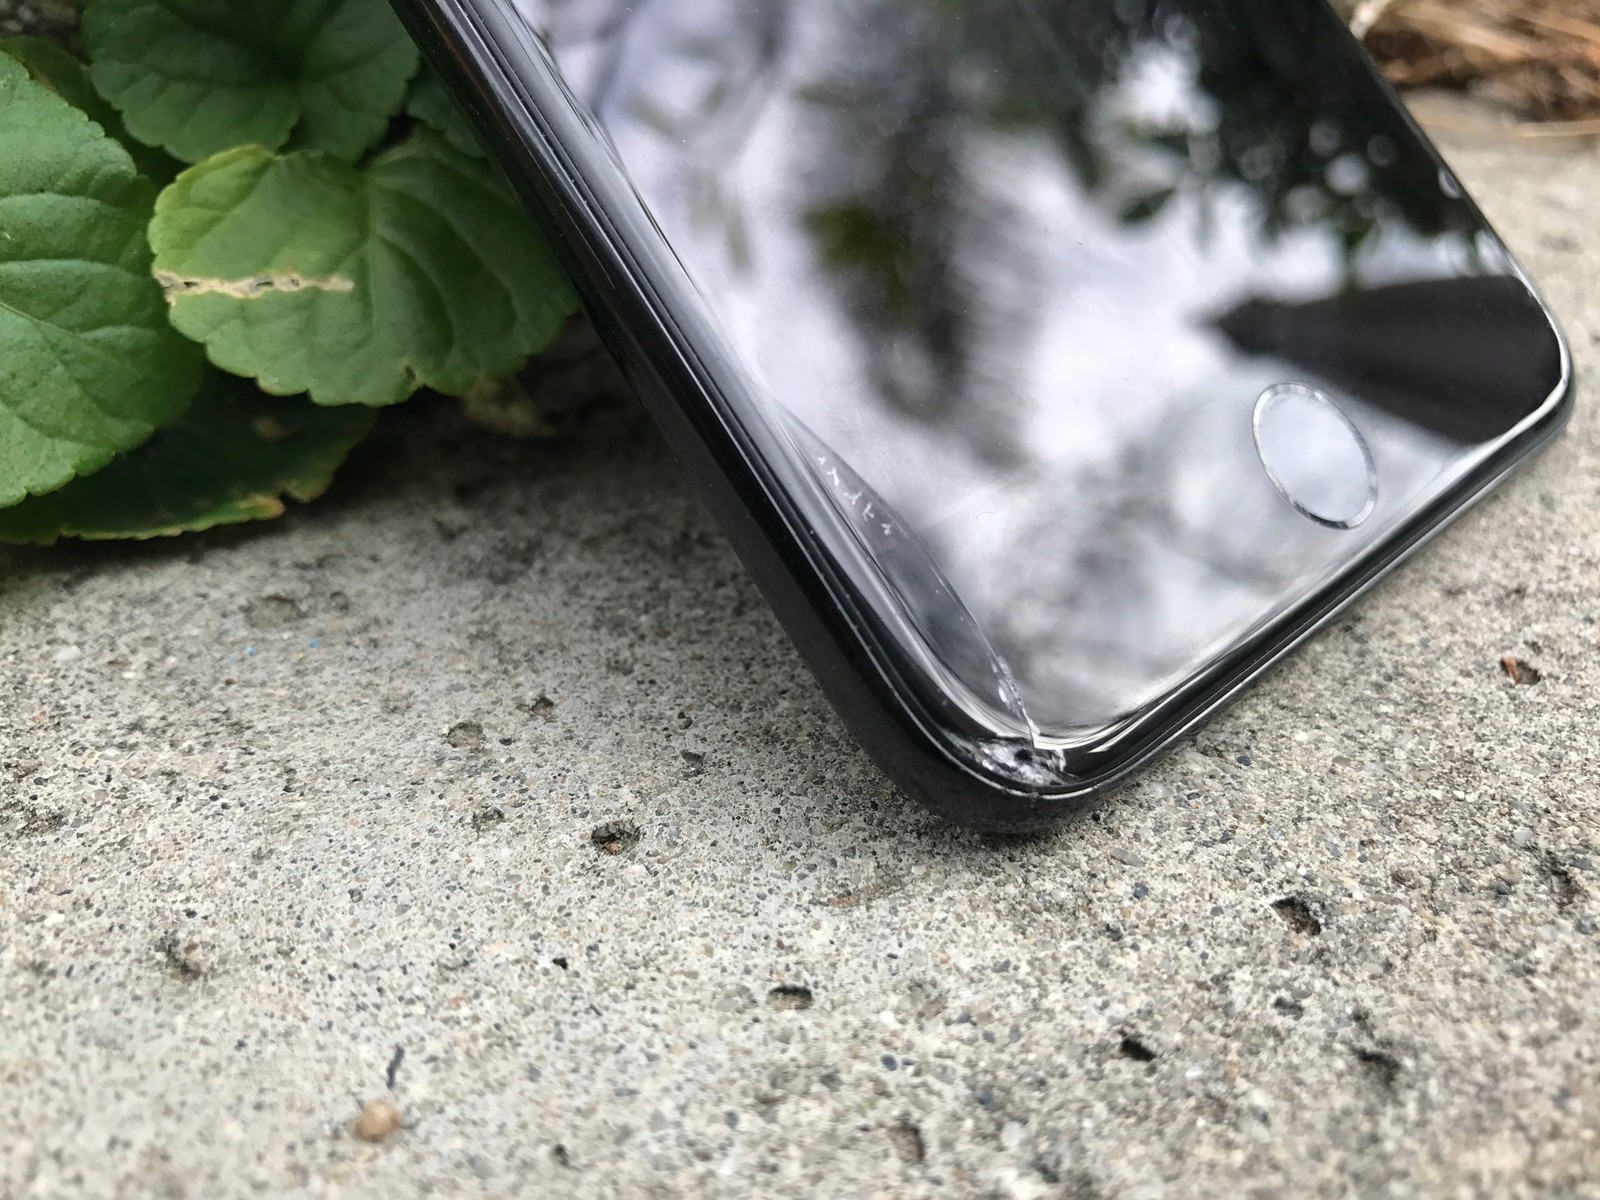 Iphone 7 Glass Break - HD Wallpaper 